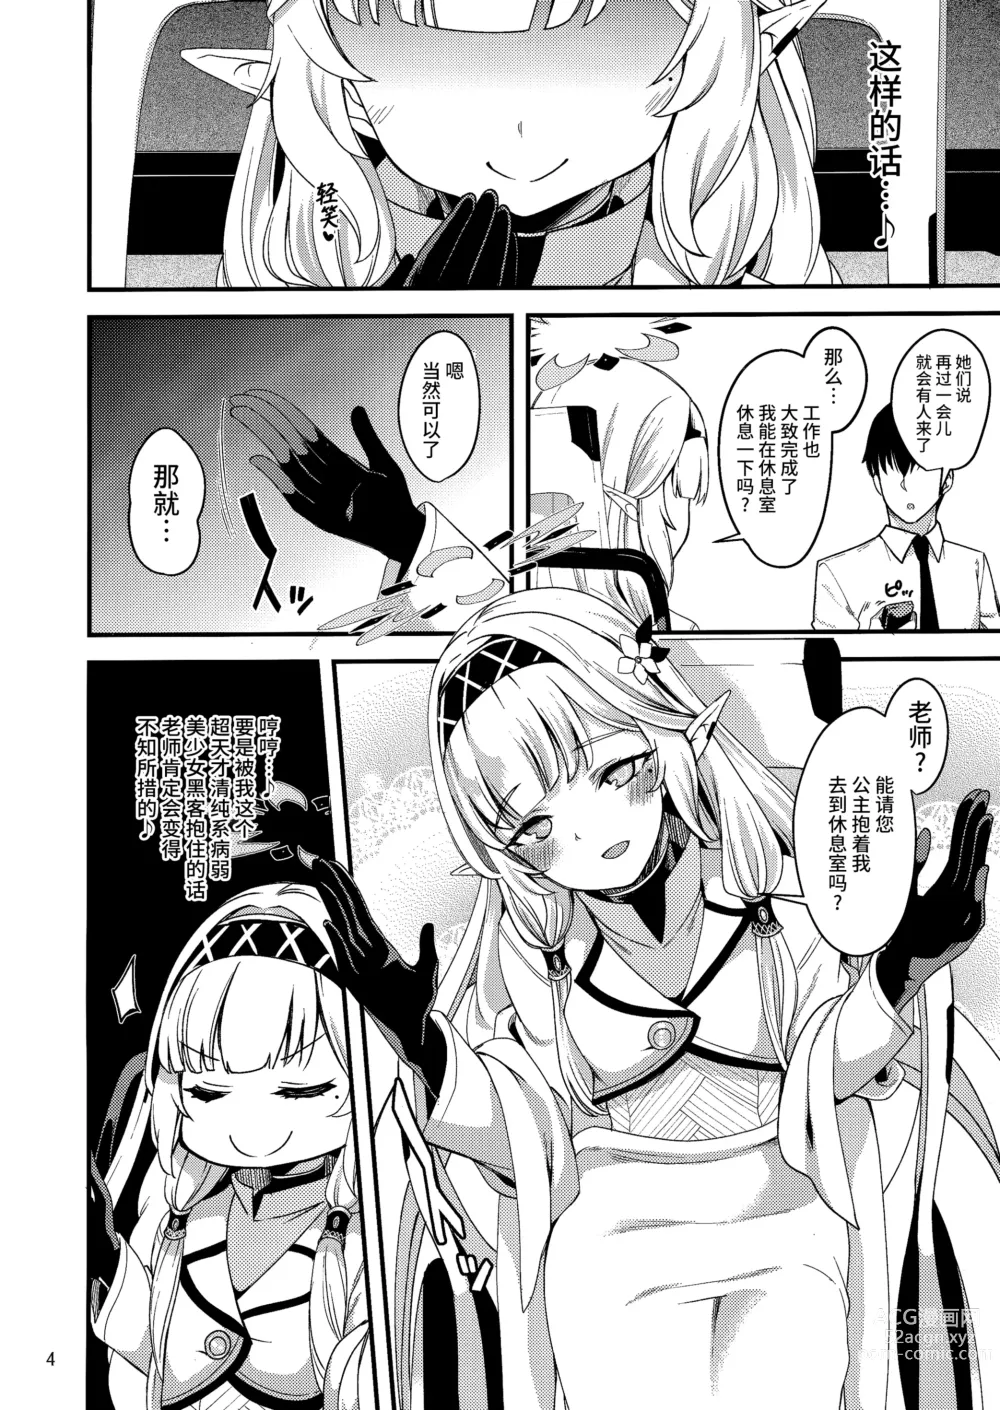 Page 4 of doujinshi 某一天的超天才色情系病弱美少女骇客